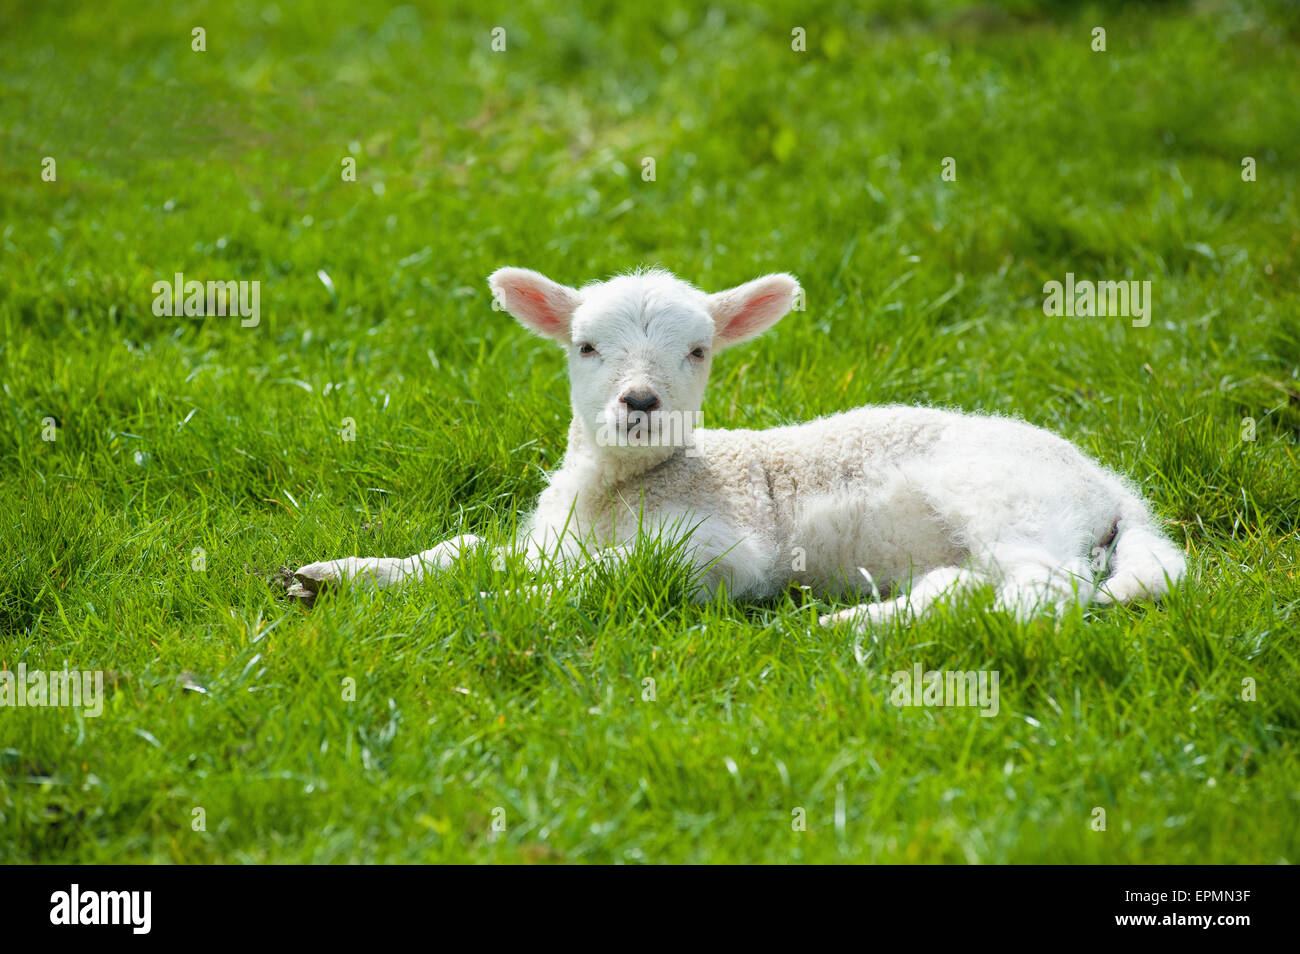 Un petit jeune agneau à la fourrure blanche, allongé sur l'herbe avec sa tête en haut Banque D'Images